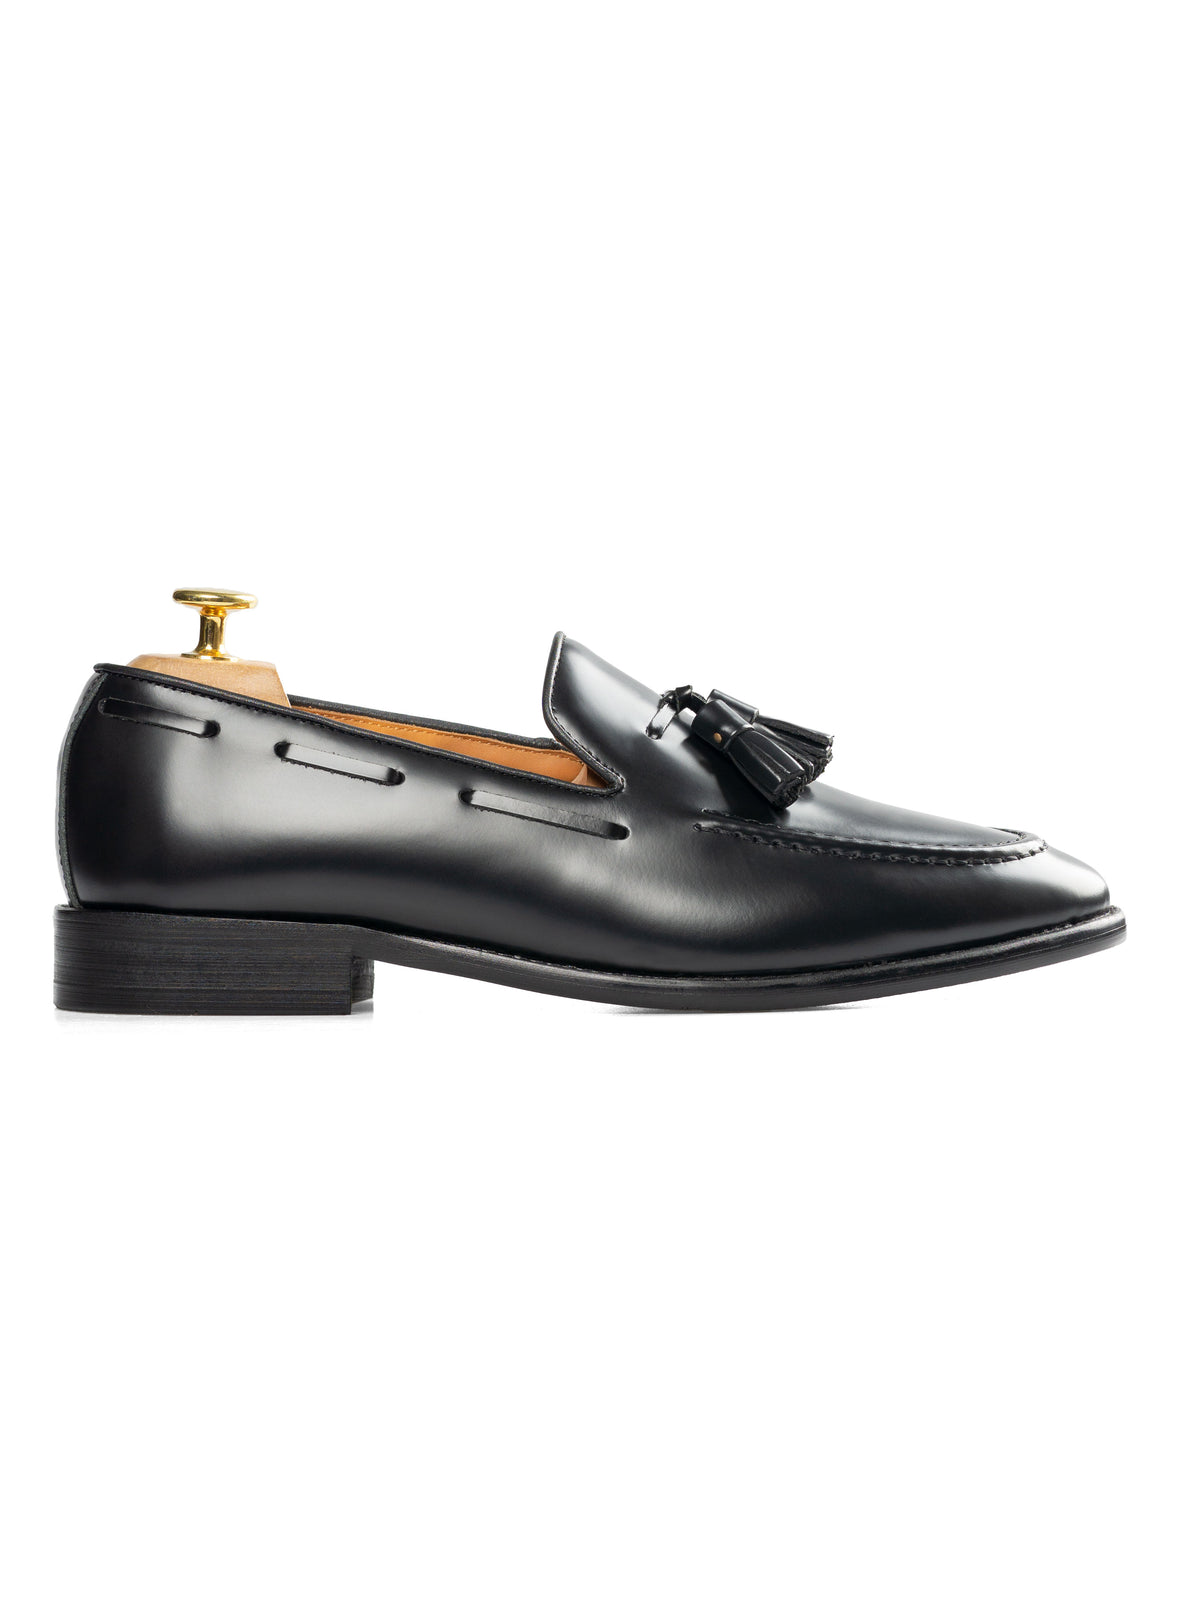 Tassel Loafer - Black Polished Leather | Zeve Shoes